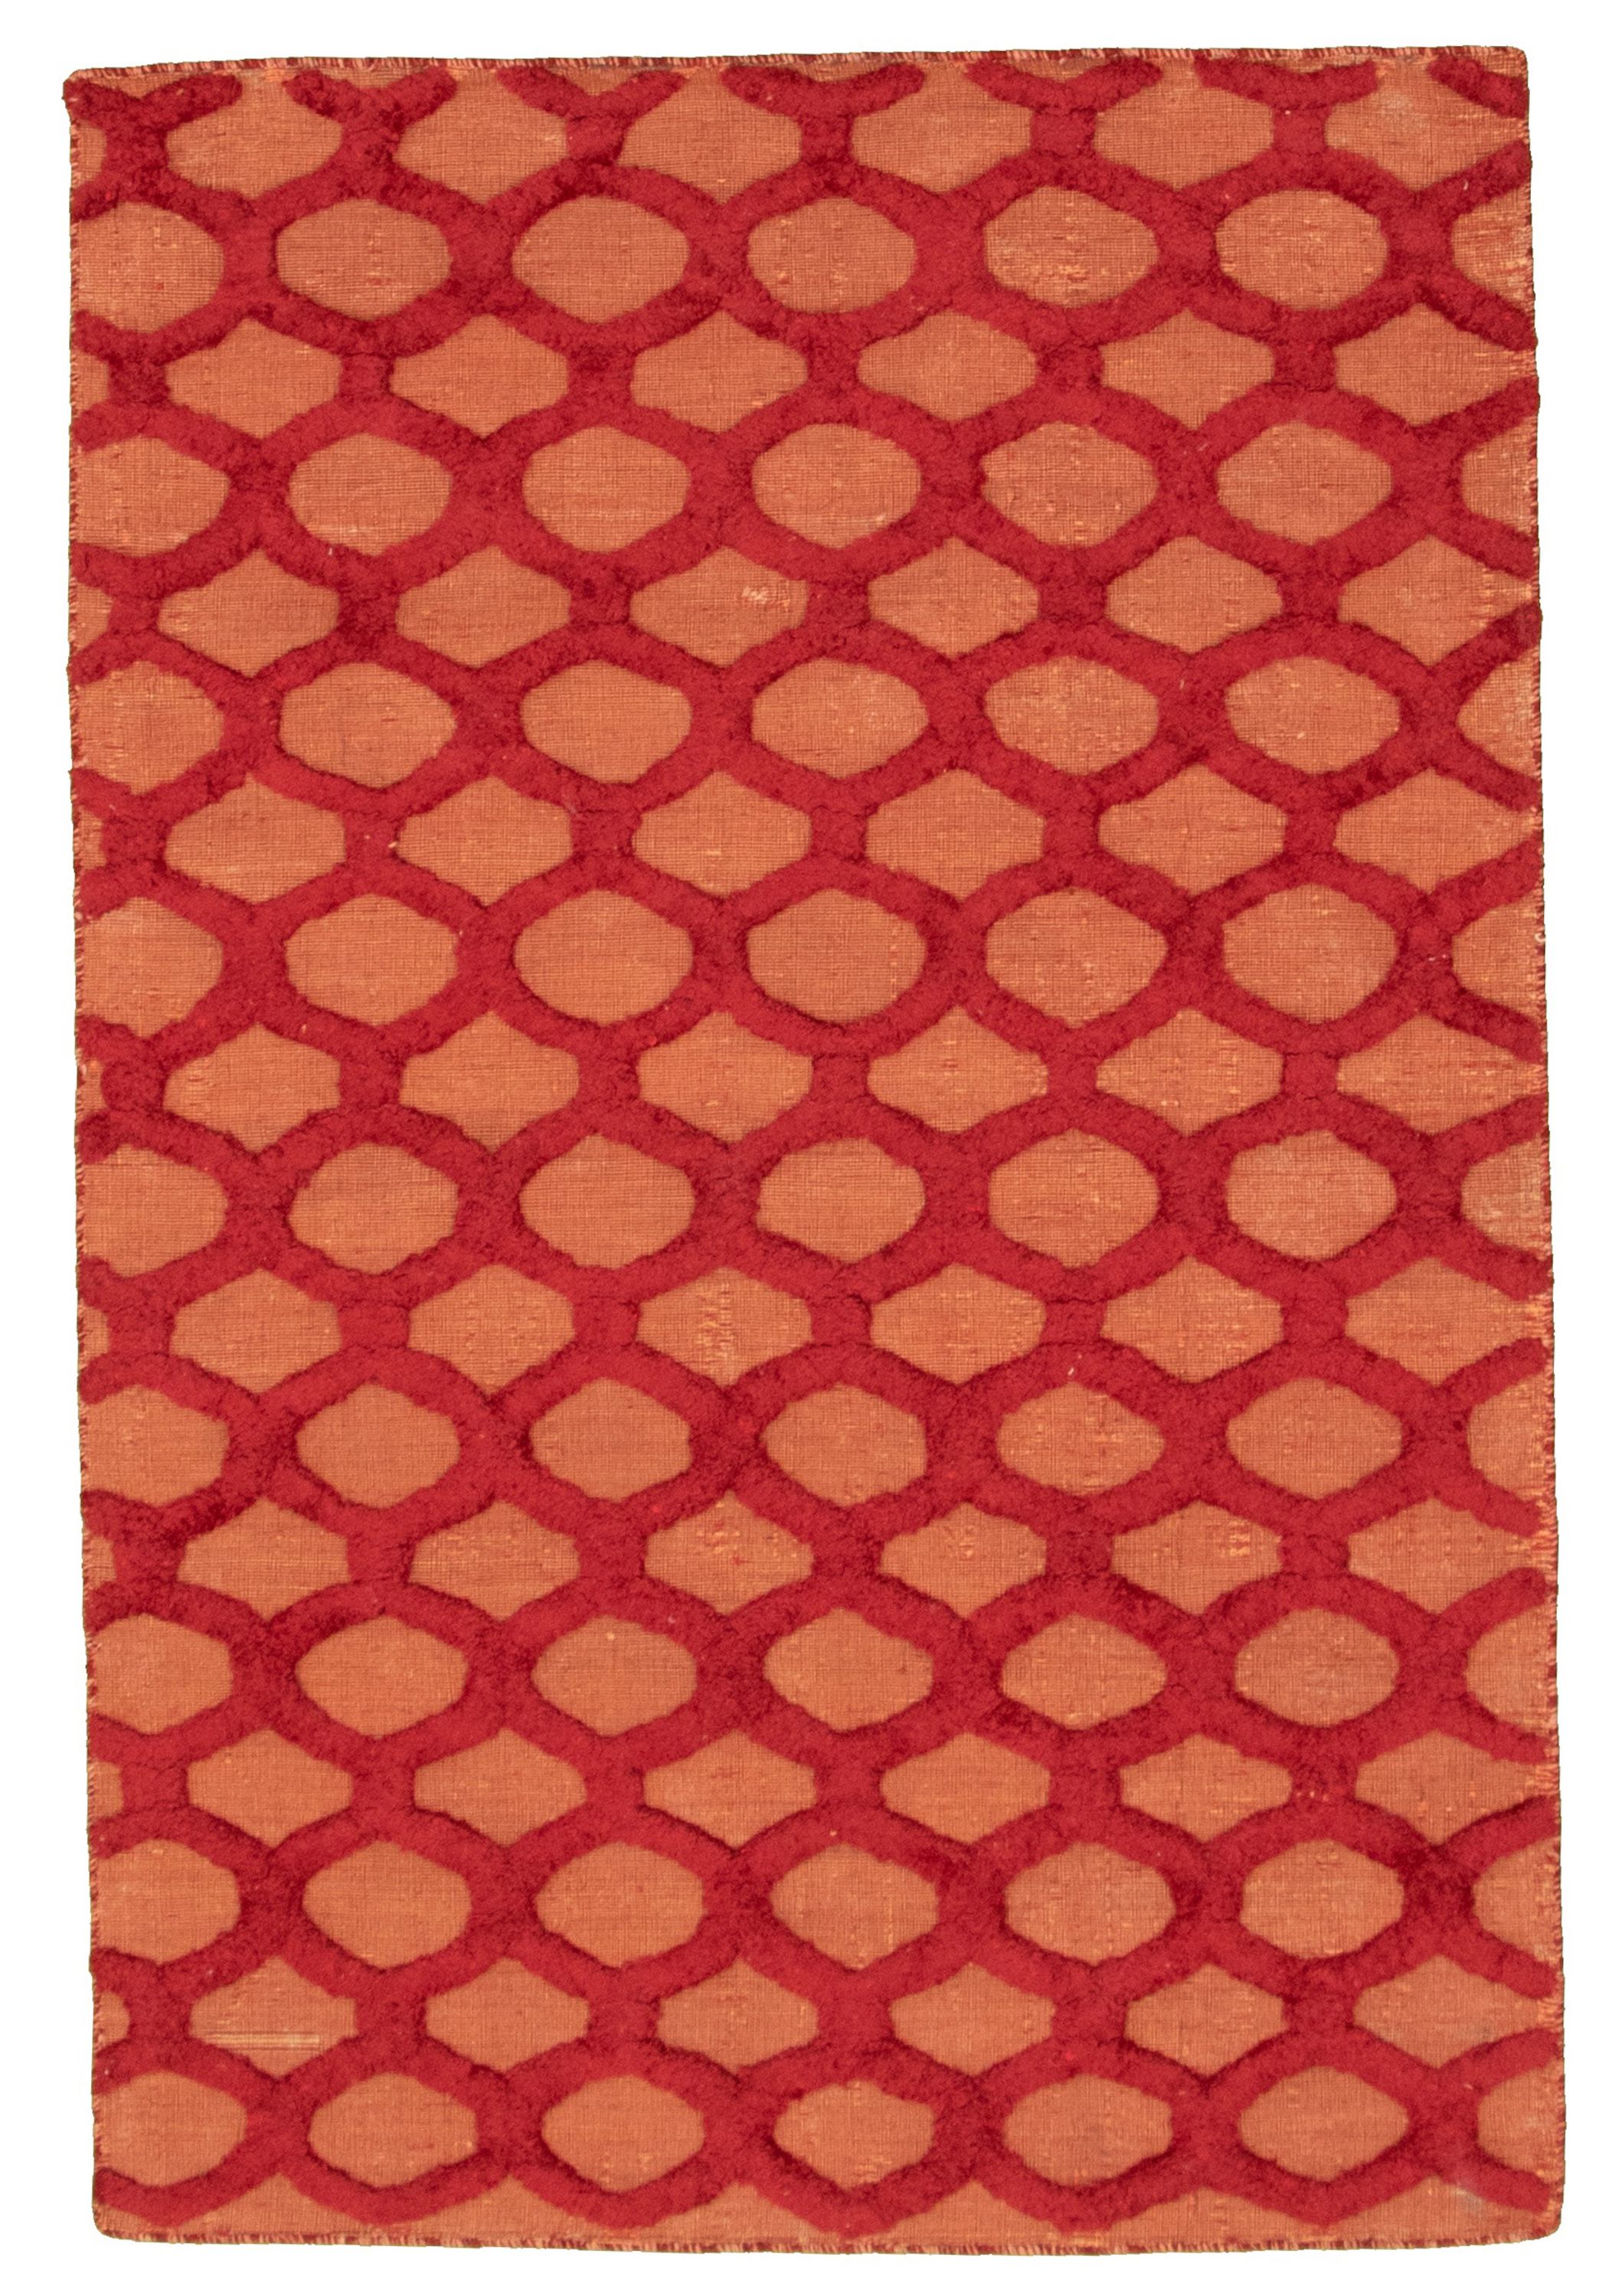 Handmade Collage Dark Red Chenille Rug 4'0" x 6'1" Size: 4'0" x 6'1"  